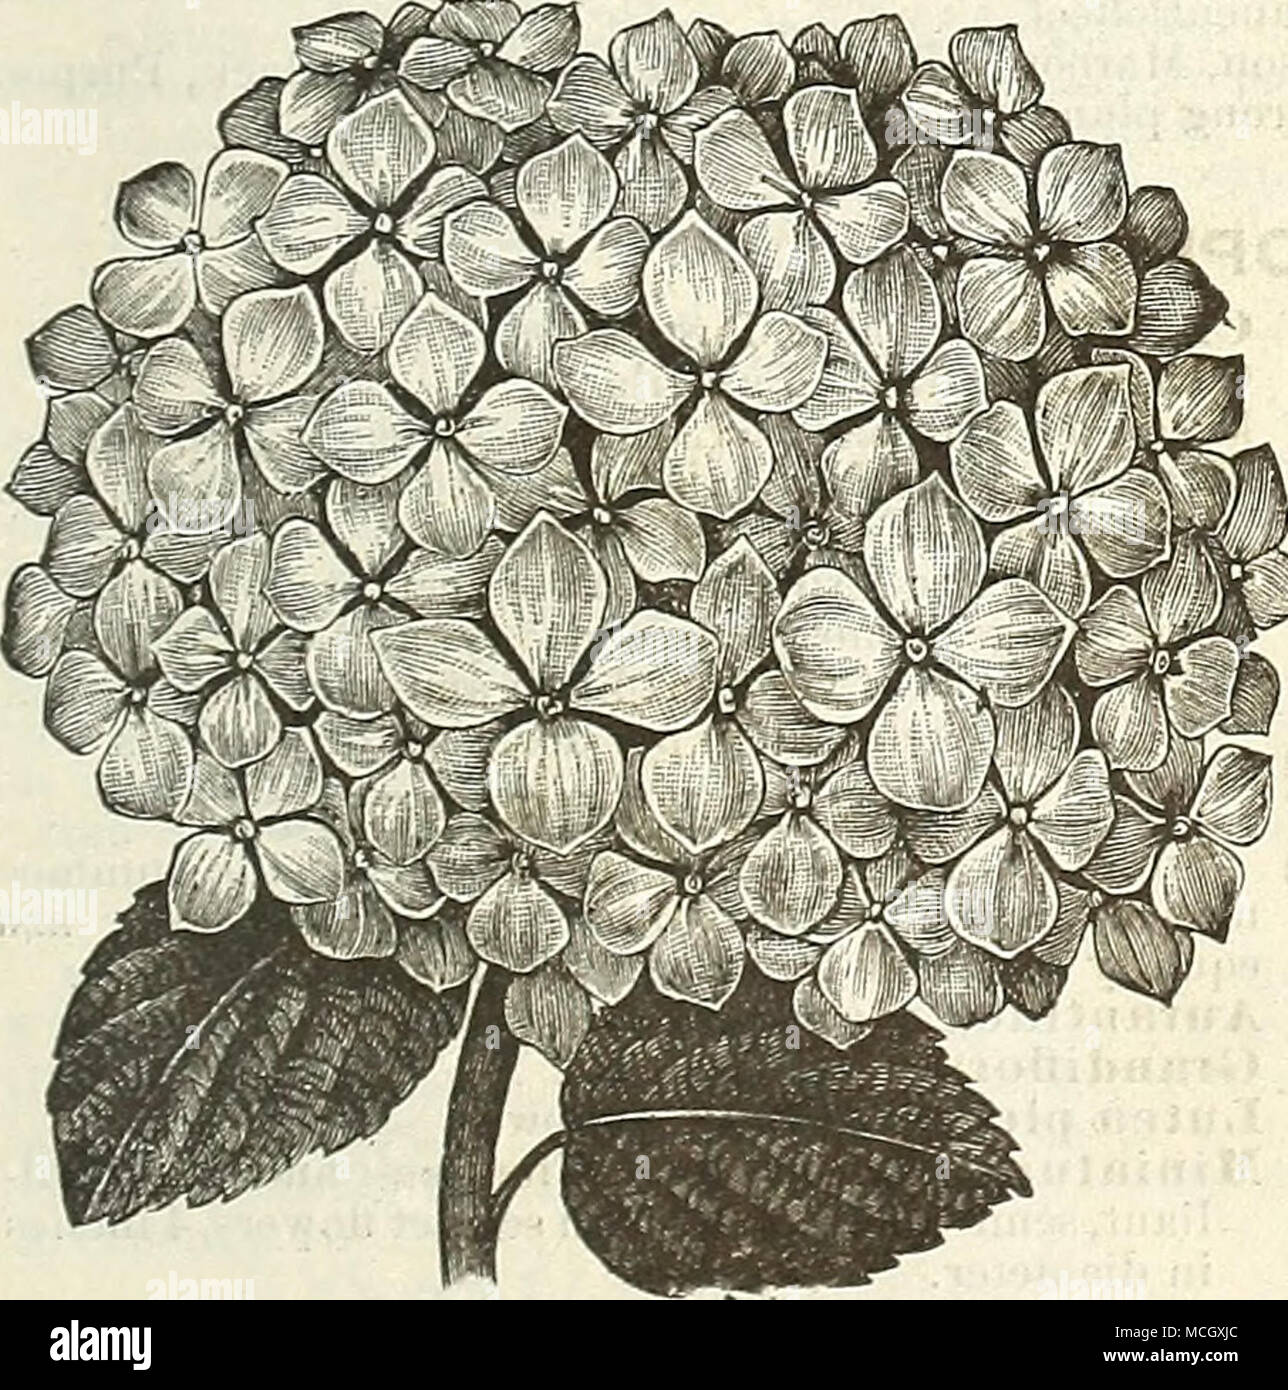 Corona de flores doble con hojas de hortensia en dos tonos y paniculata